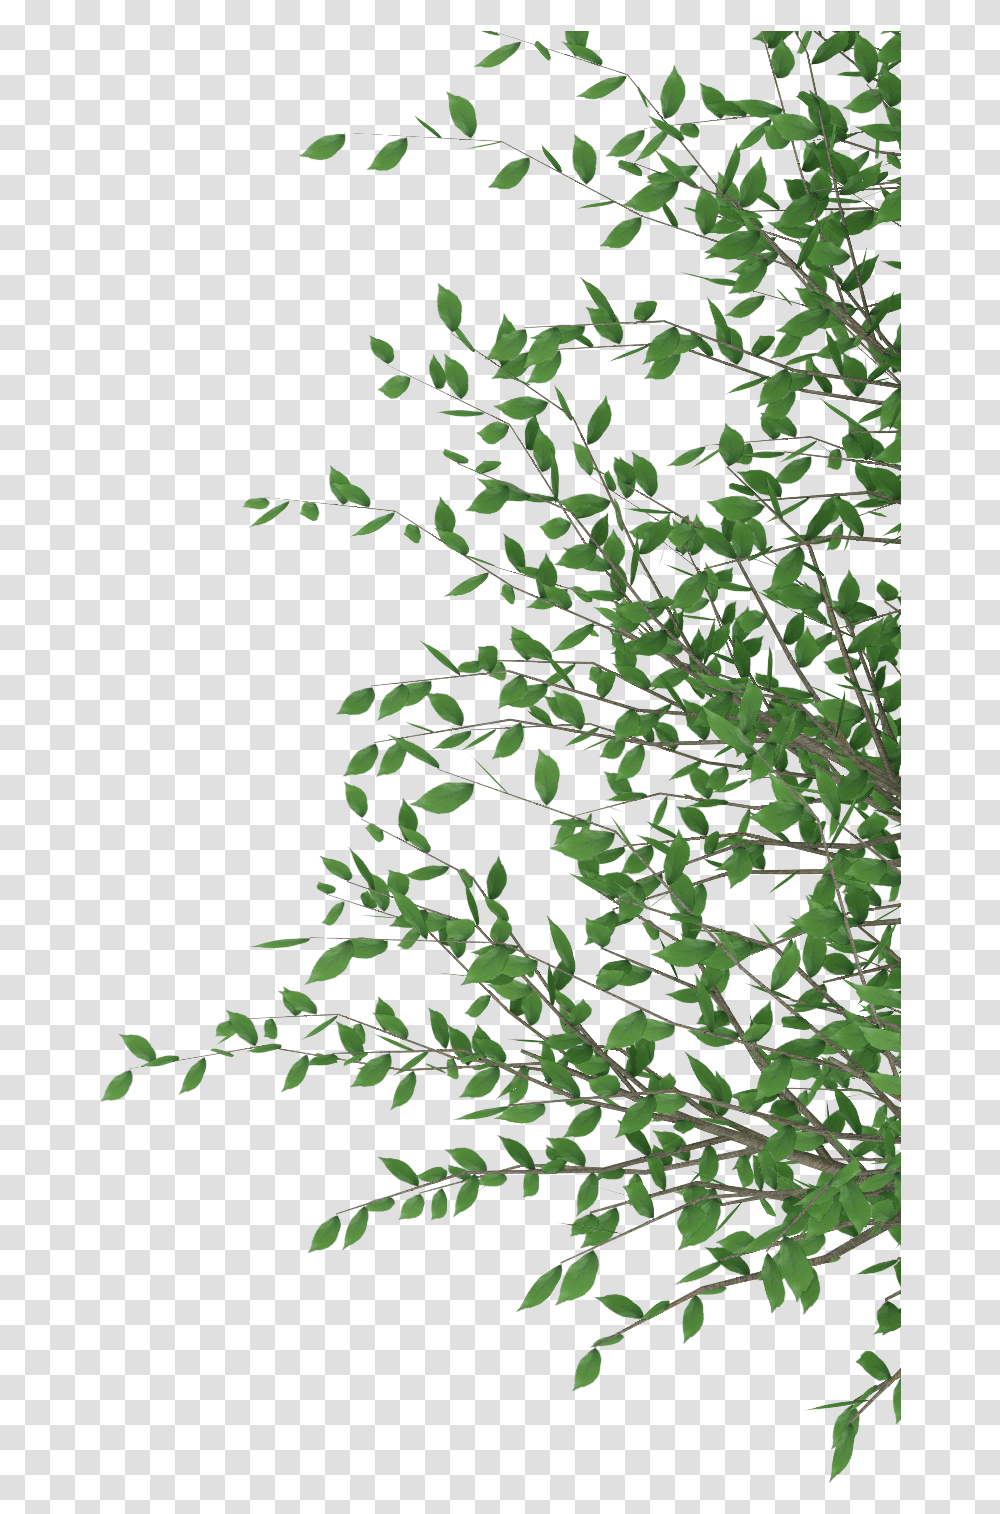 Cut Out Photoshop Download Cut Out Photoshop, Tree, Plant Transparent Png